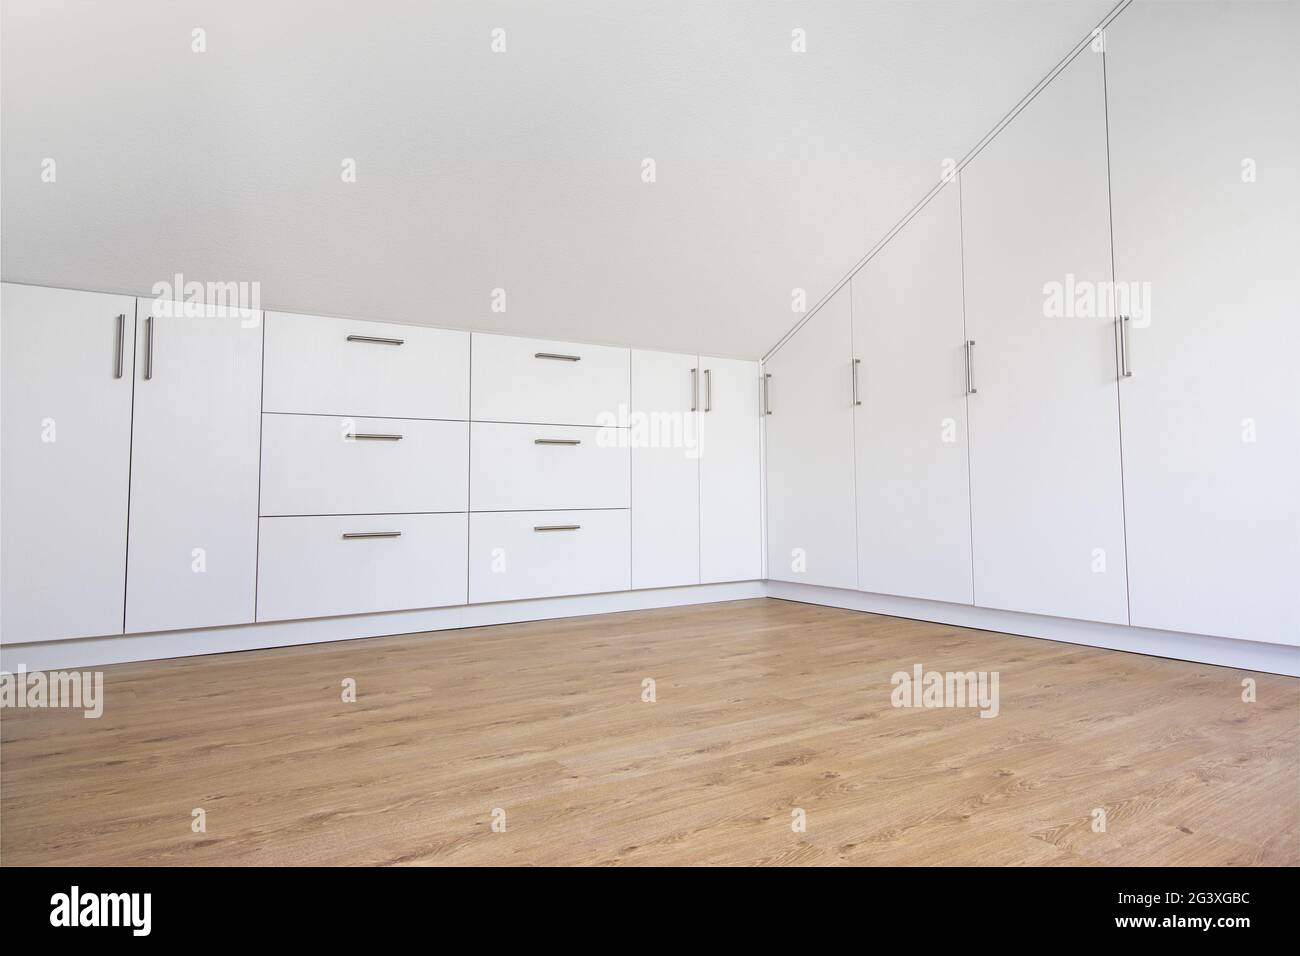 armoire moderne blanche intégrée dans la chambre vide avec toit en pente Banque D'Images